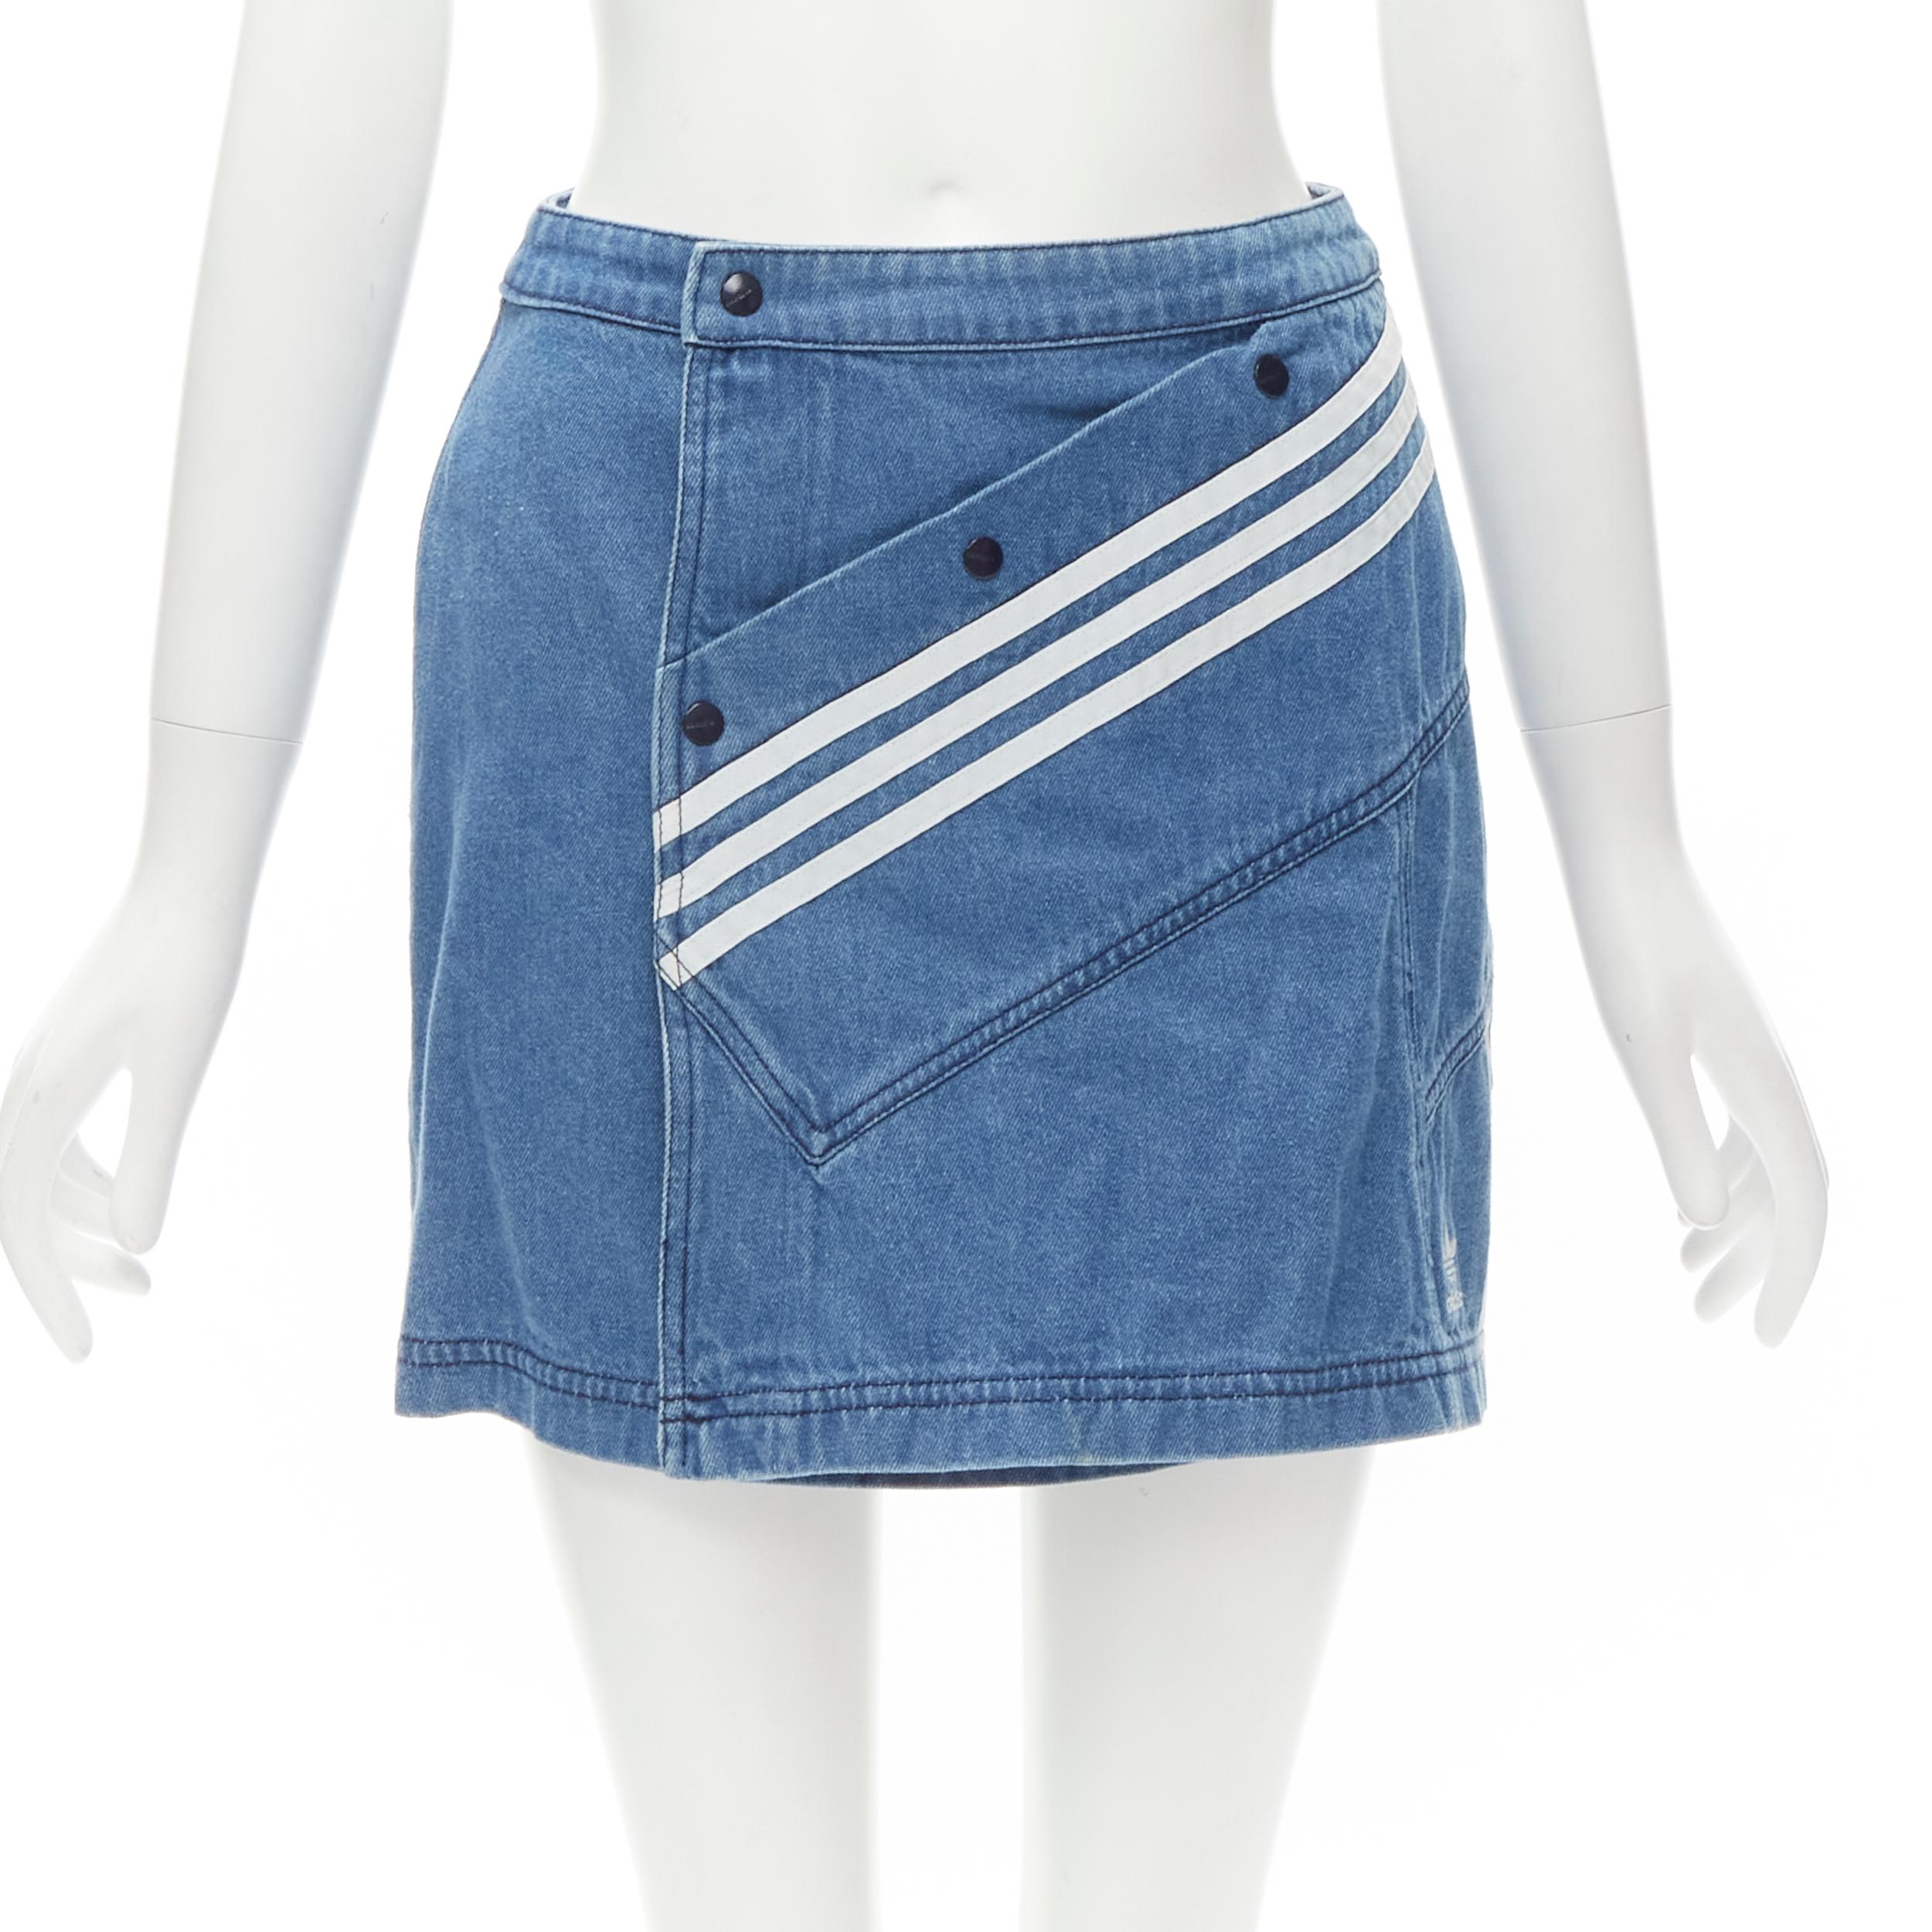 adidas Originals x Fiorucci trefoil denim mini skirt | ASOS